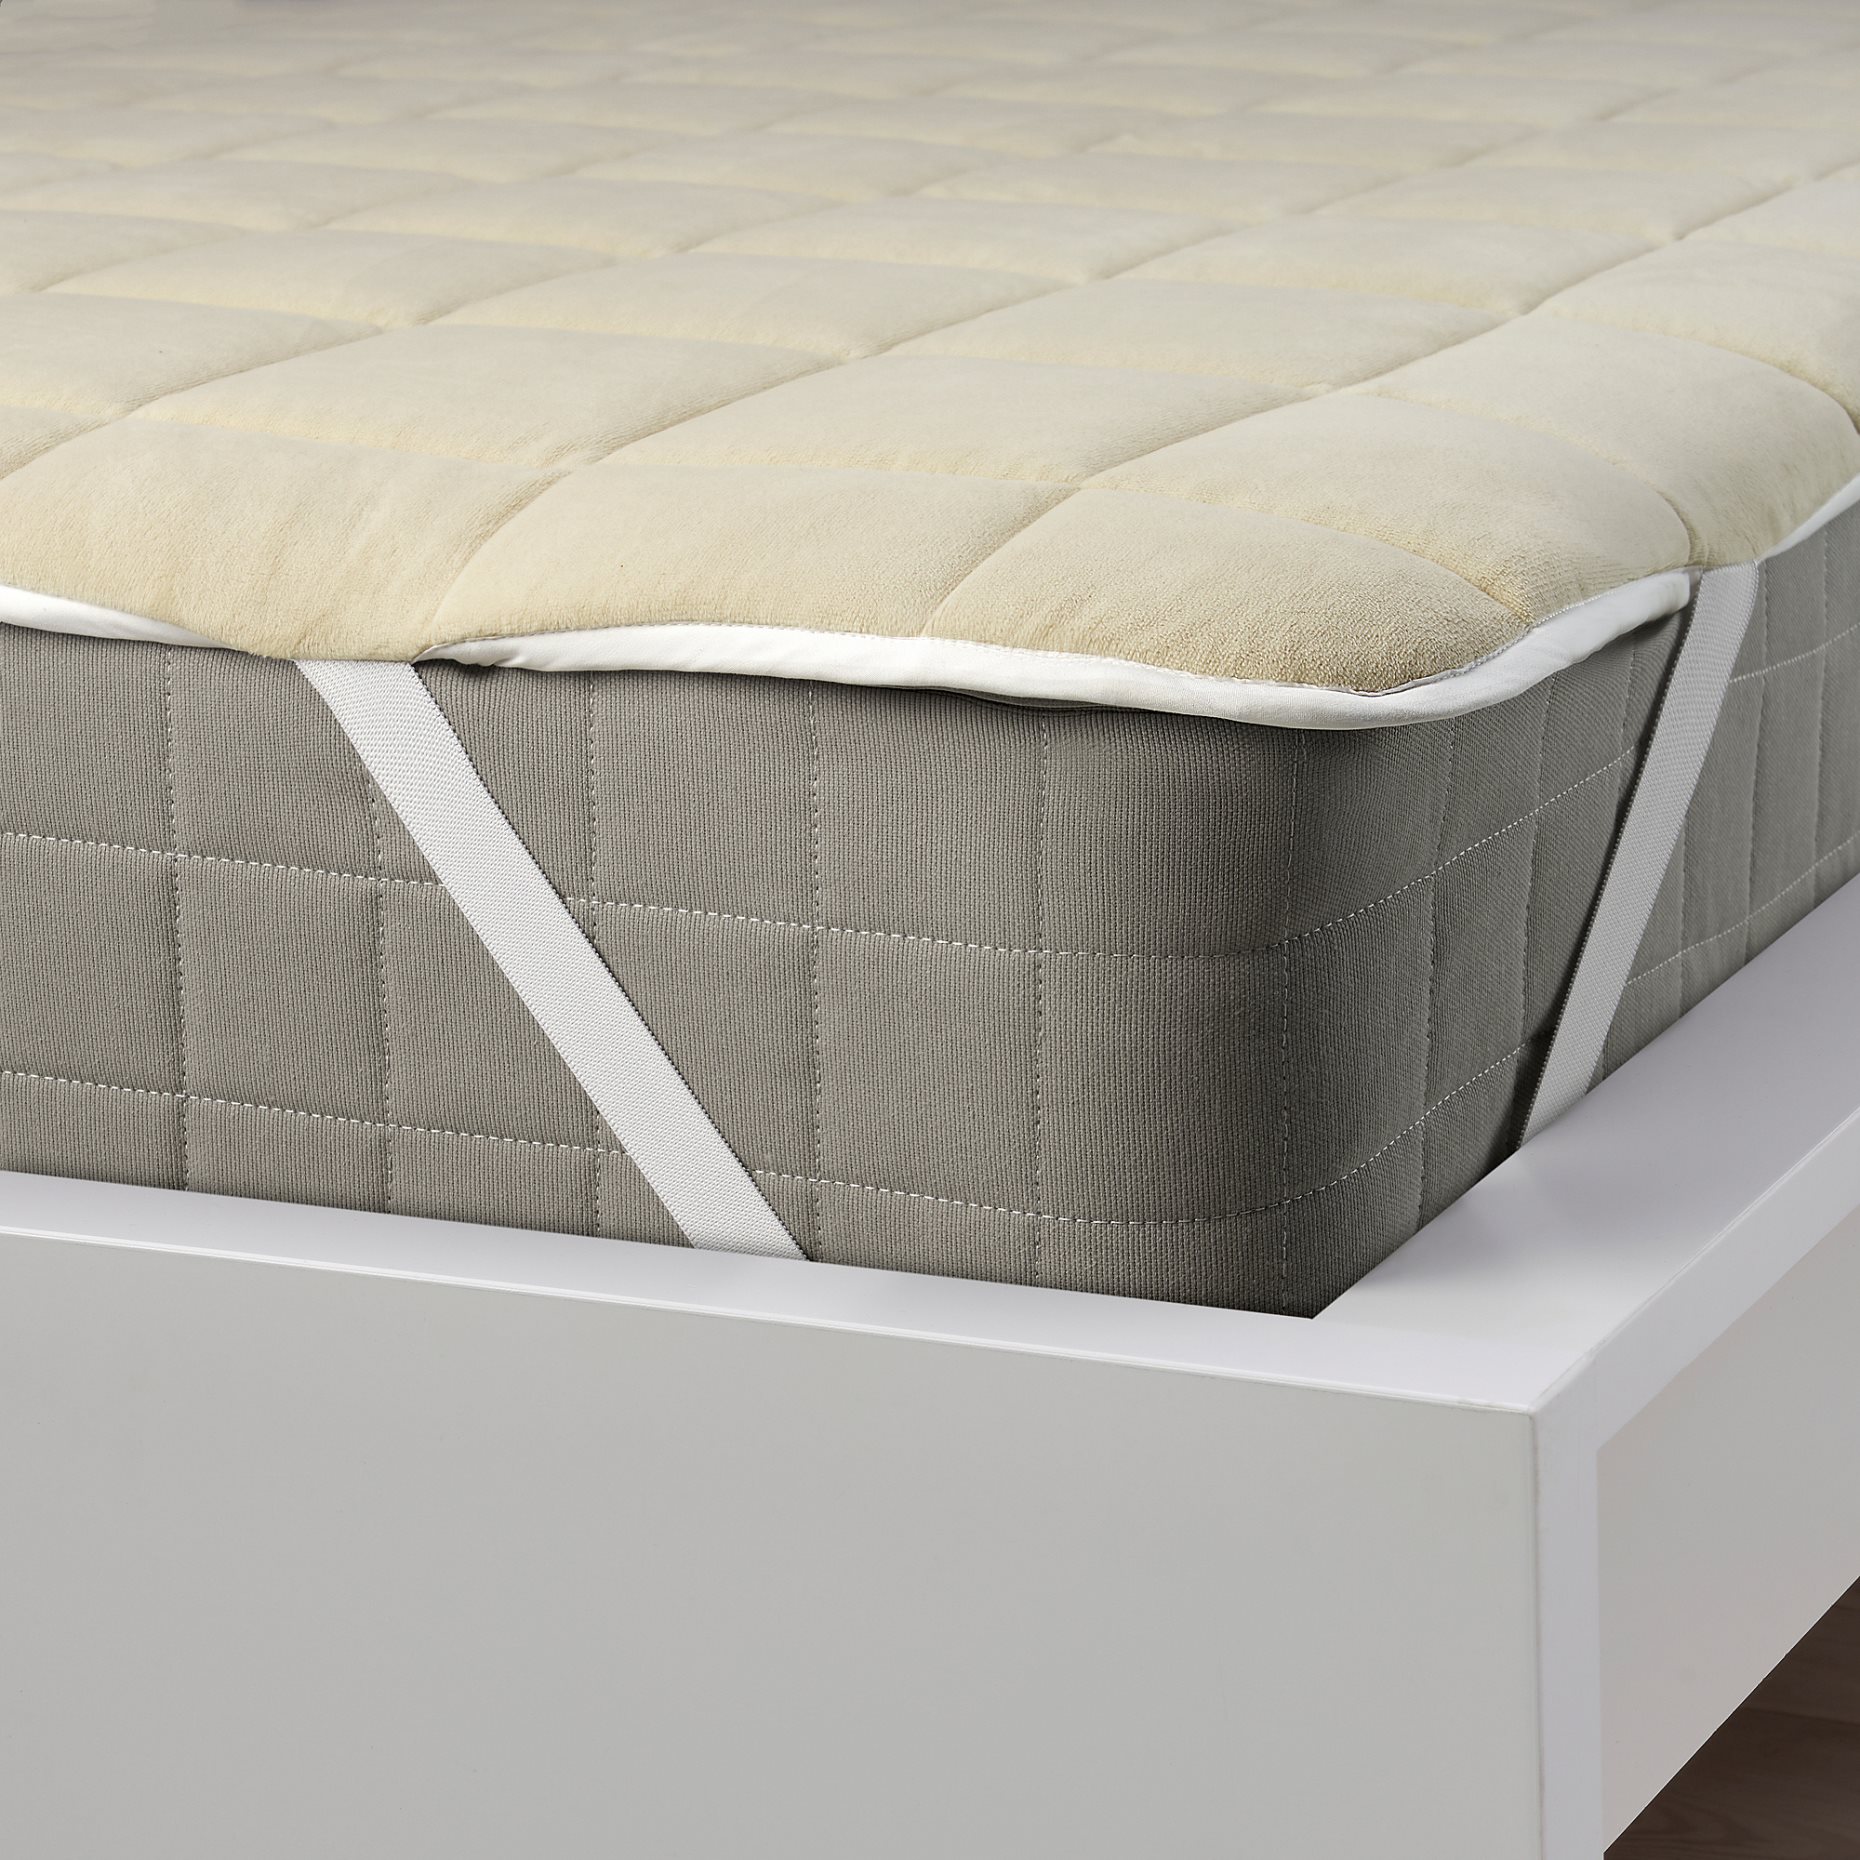 KEJSAROLVON, mattress protector, 180x200 cm, 905.804.34